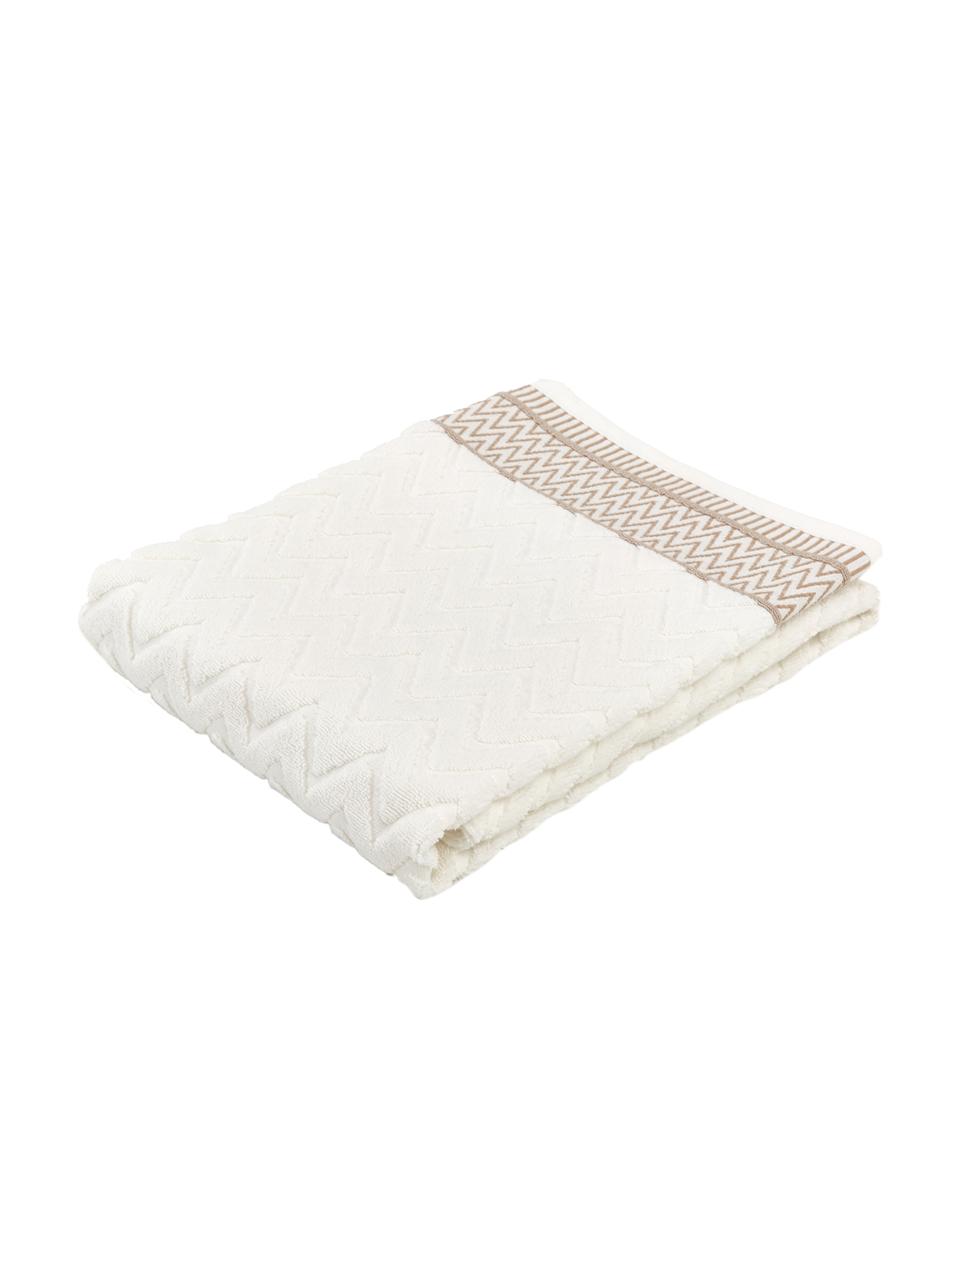 Asciugamano in cotone con motivo a rilievo Karma, 100% cotone
Qualità pesante, 600 g/m2, Bianco, beige, Telo bagno